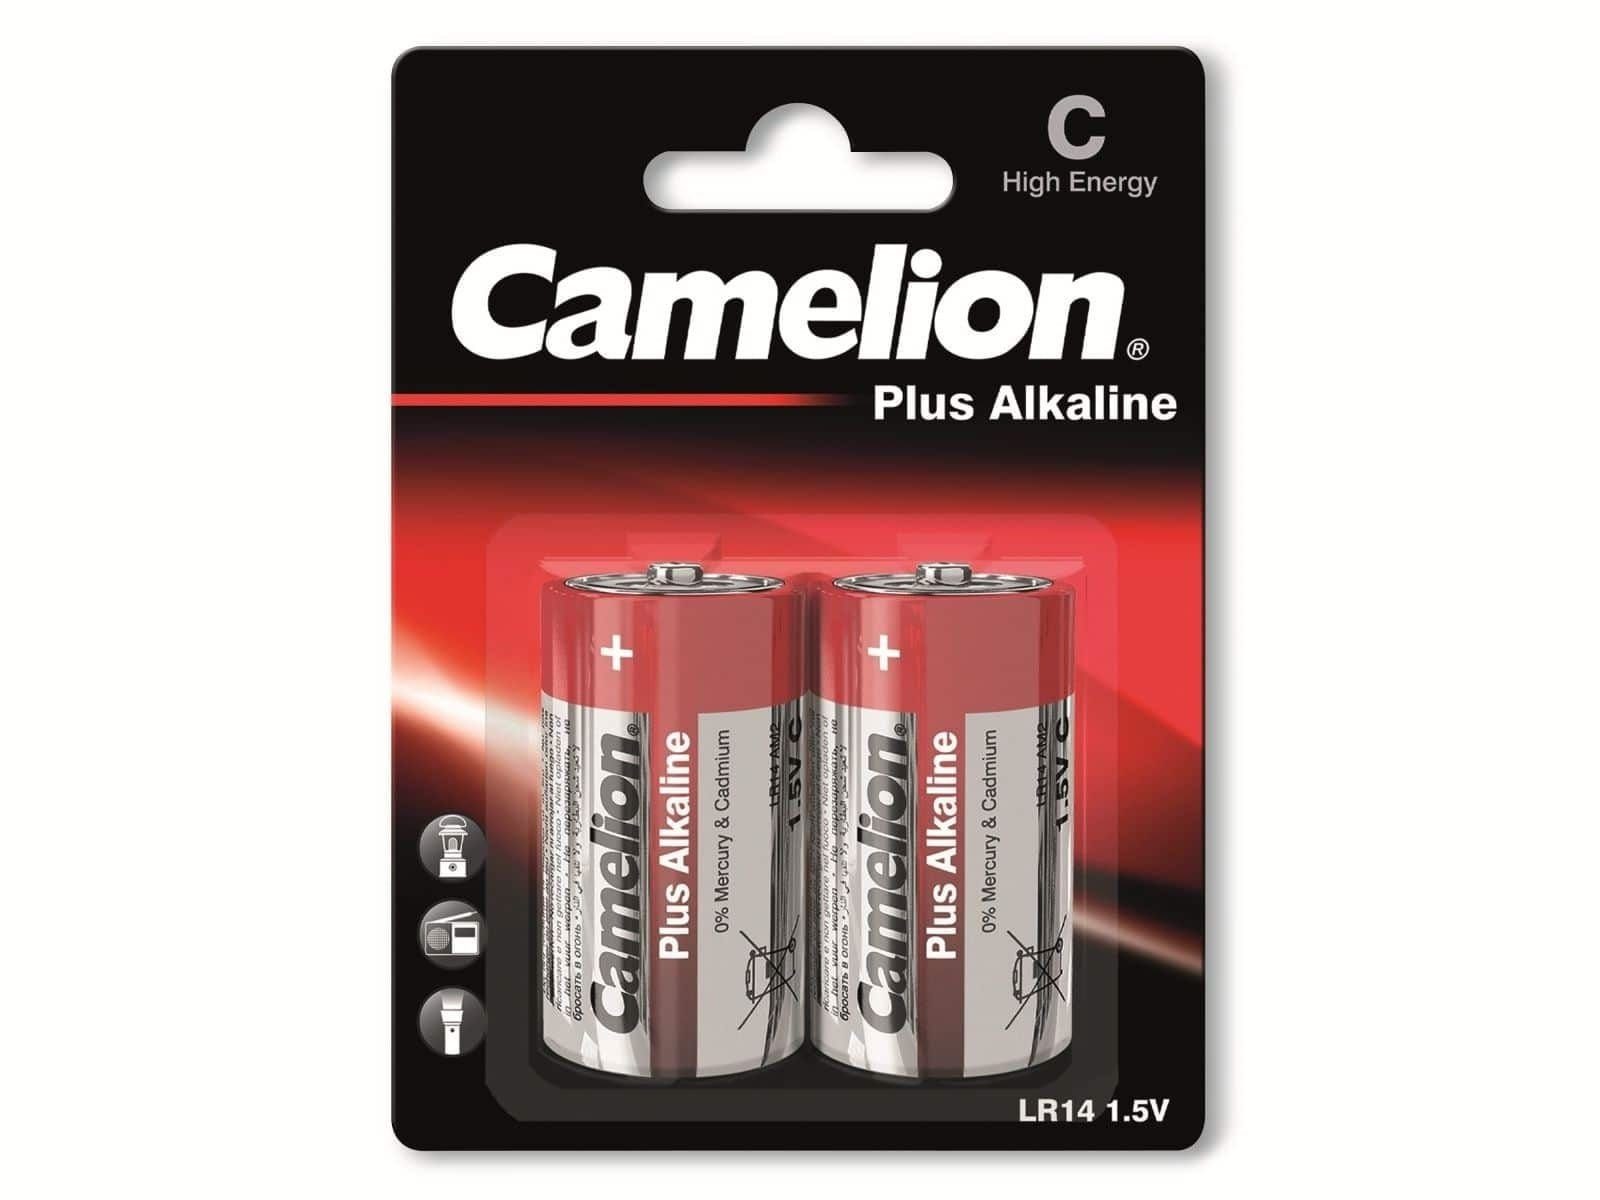 LR14, Camelion Baby-Batterie, Plus-Alkaline, 2 Batterie CAMELION